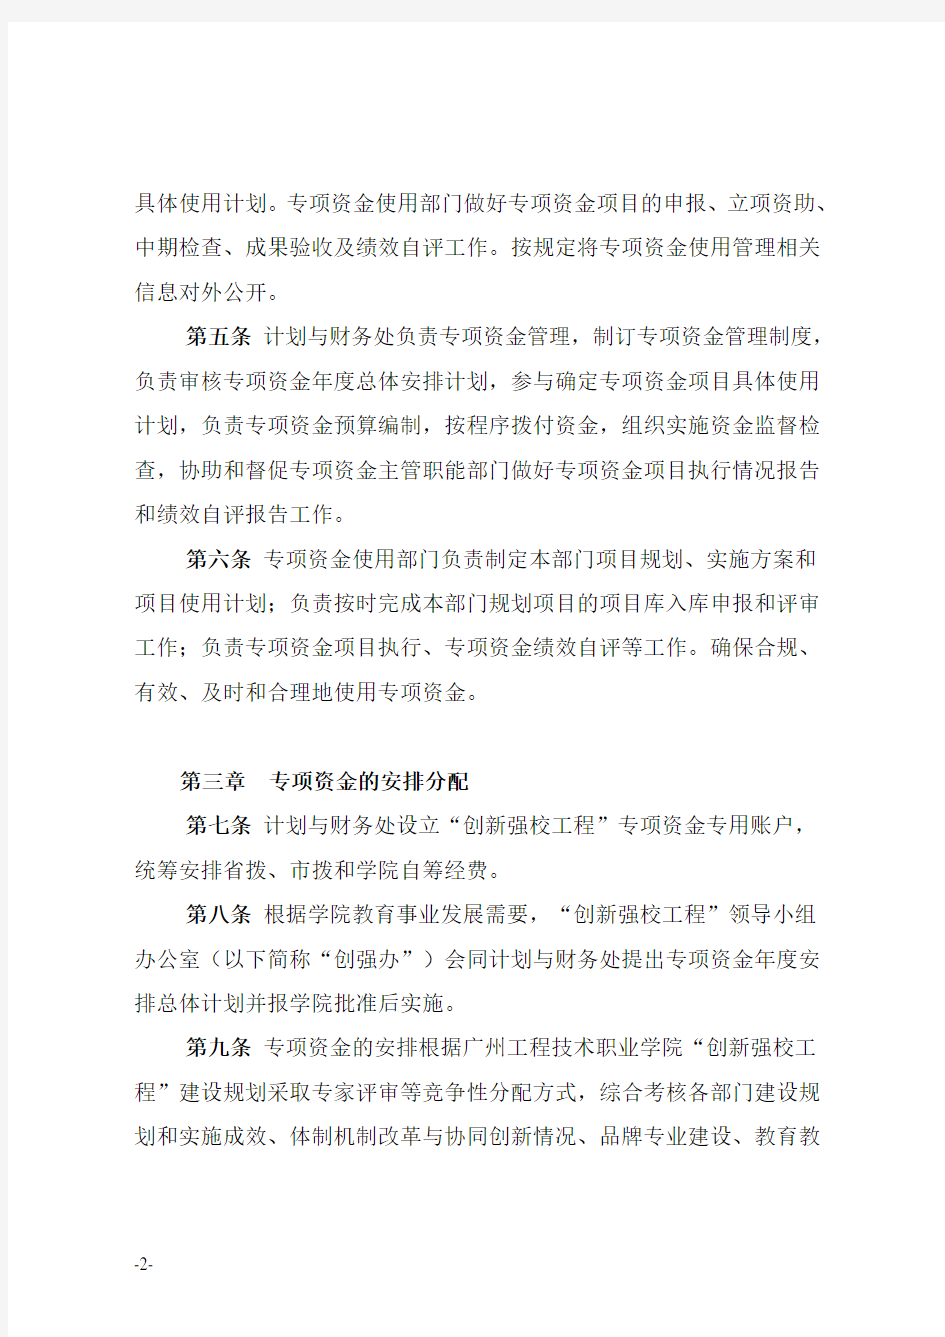 广州市区域节能评估报告编制指南.doc-广州市发展和改革委员会